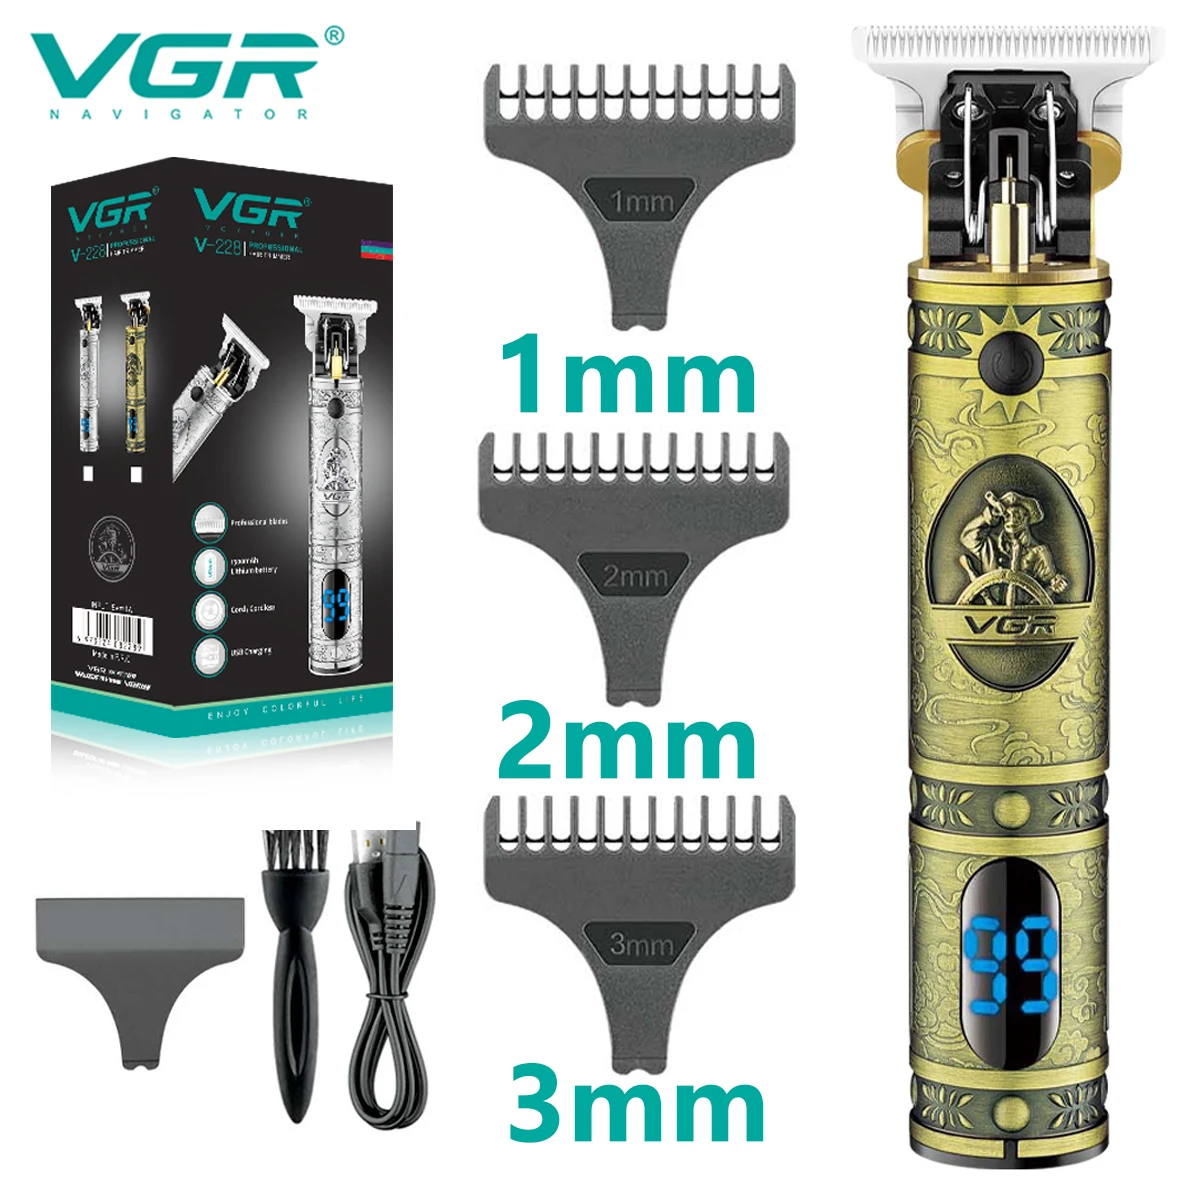 

Машинка для стрижки волос VGR T9, Профессиональный парикмахерский беспроводной электрический триммер, перезаряжаемый триммер для мужчин